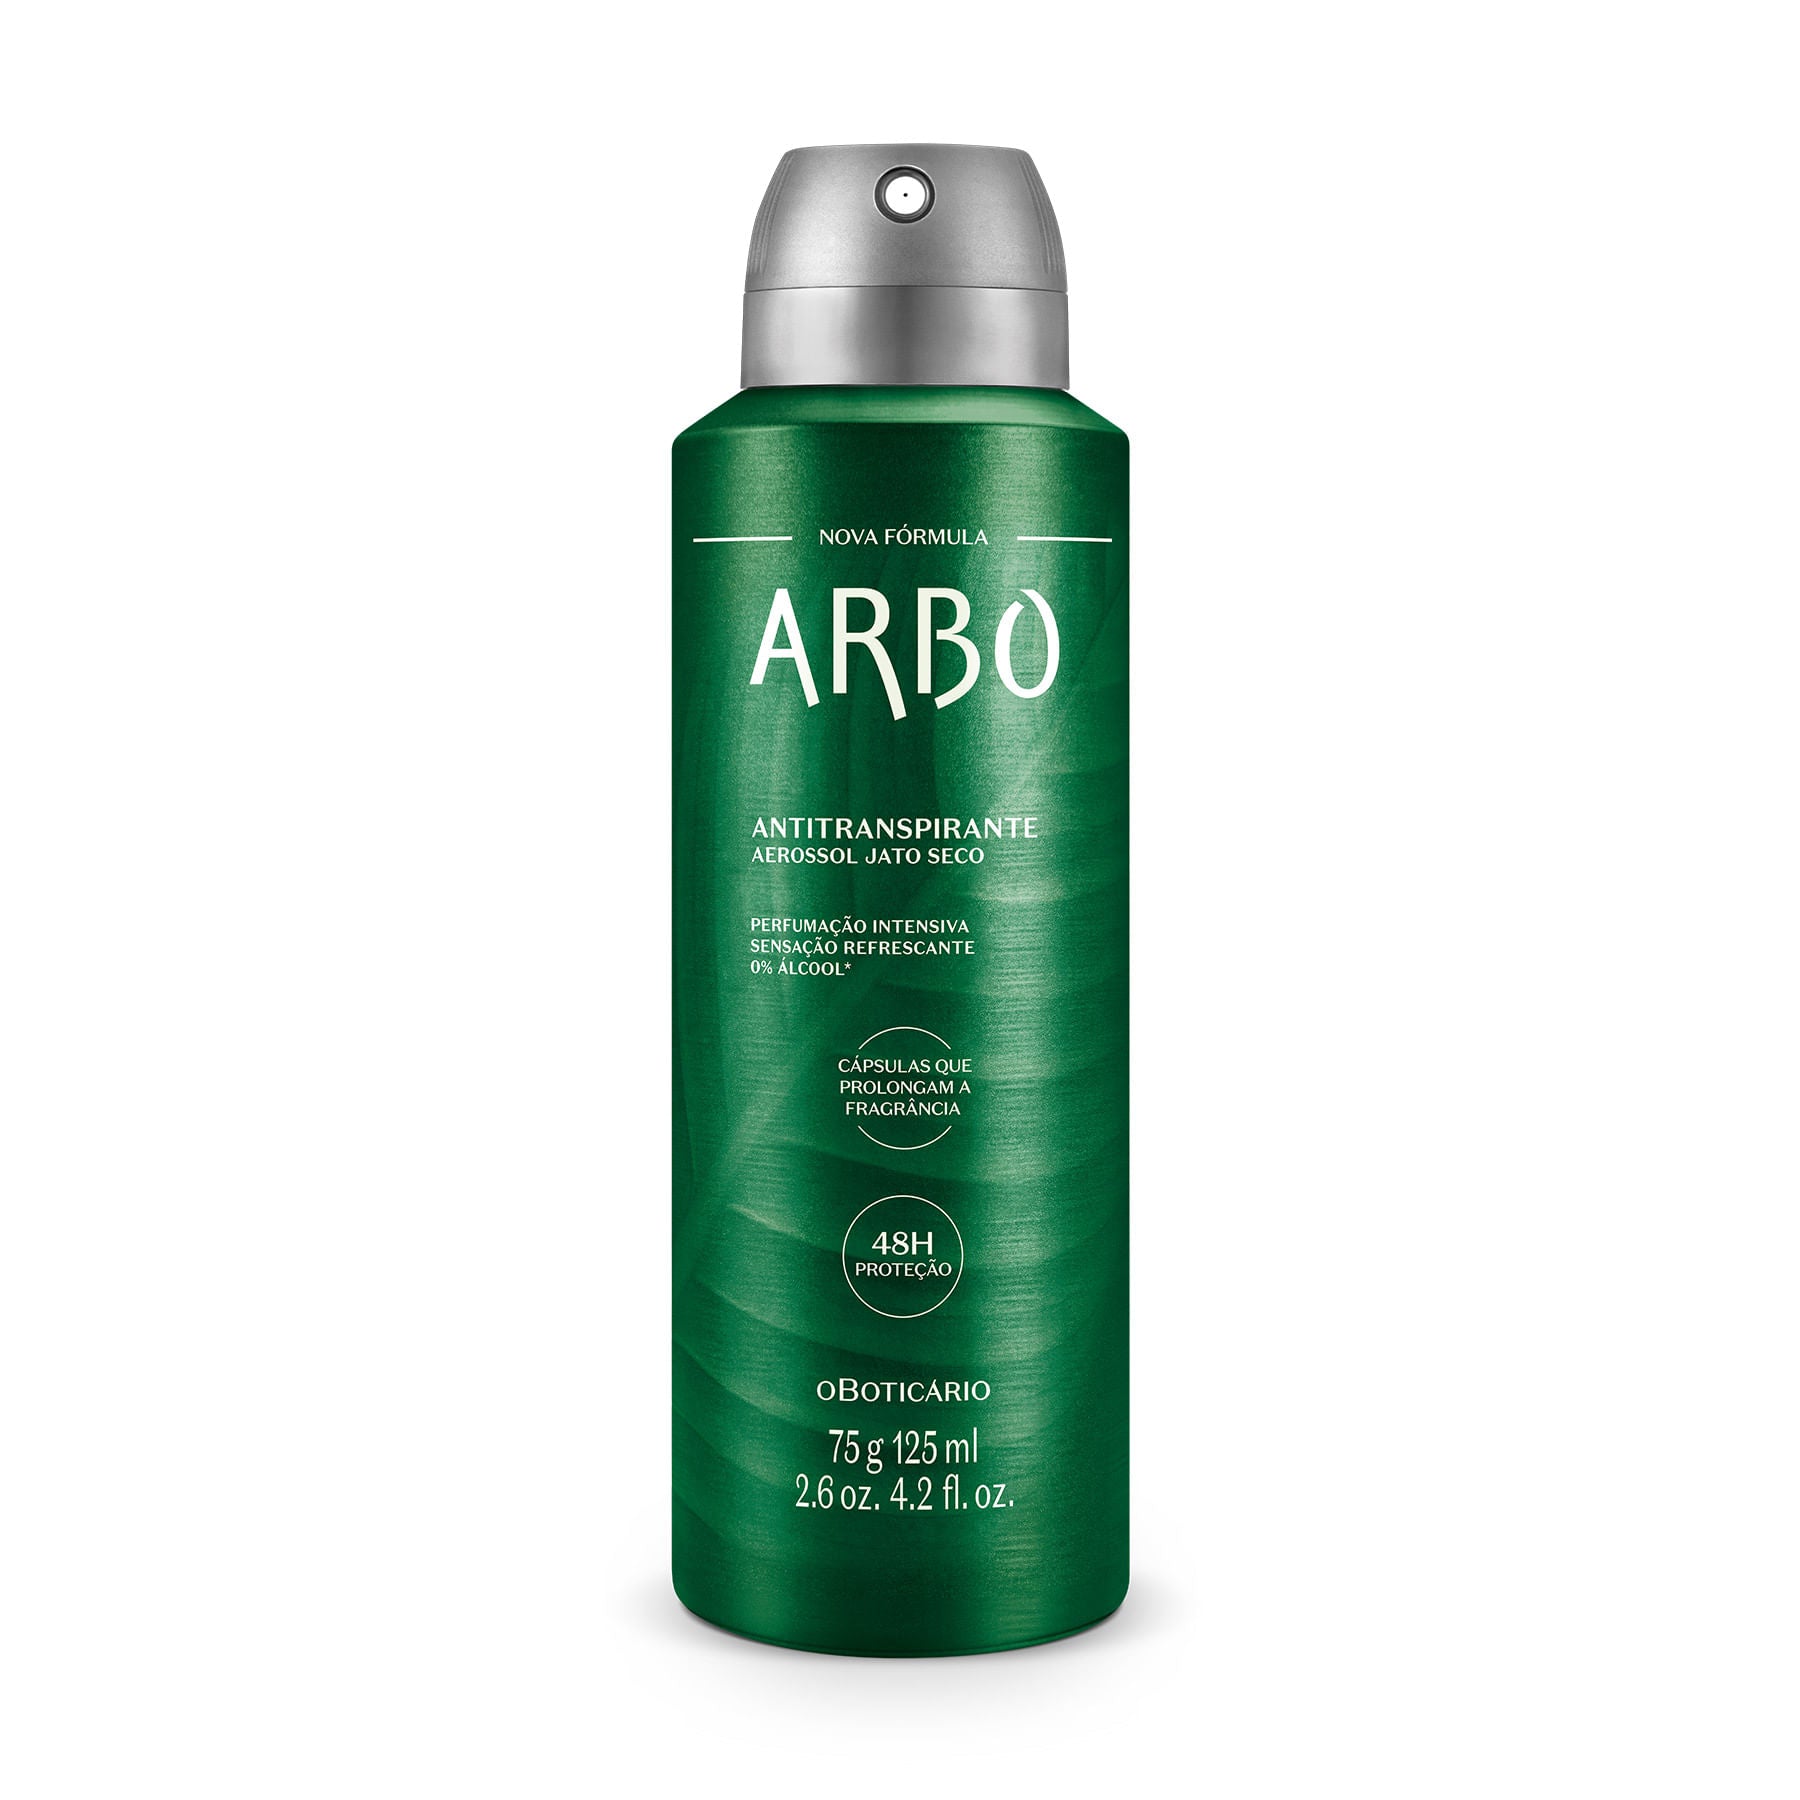 Antitranspirante Desodorante unisex en Aerosol, 75 g Arbo en Oboticário Colombia